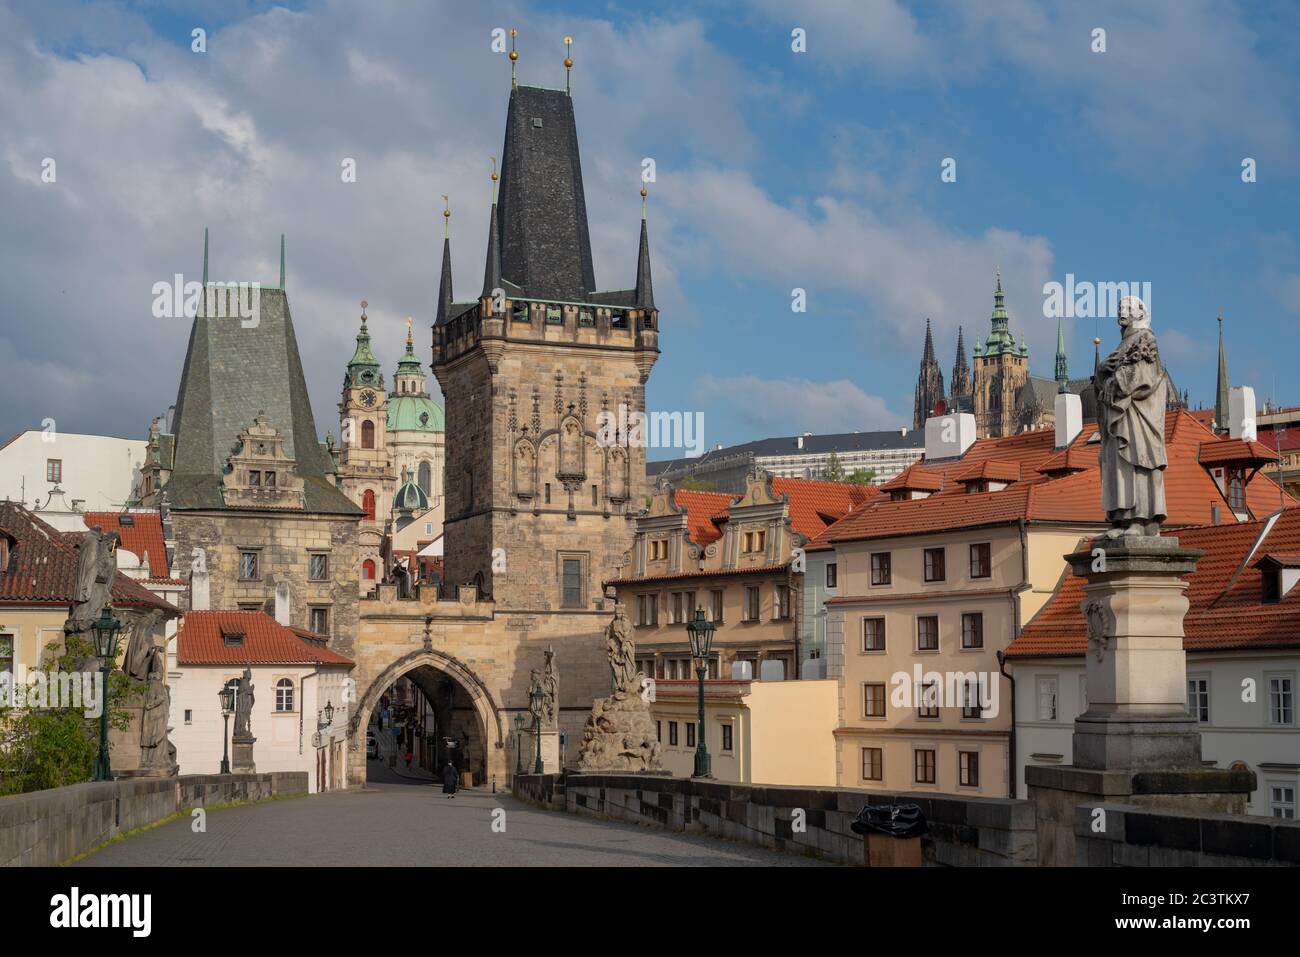 Petite ville tête de pont du pont Charles avec porte gothique et tours. L'église Saint-Nicolas et le château de Prague sont visibles au loin. Banque D'Images